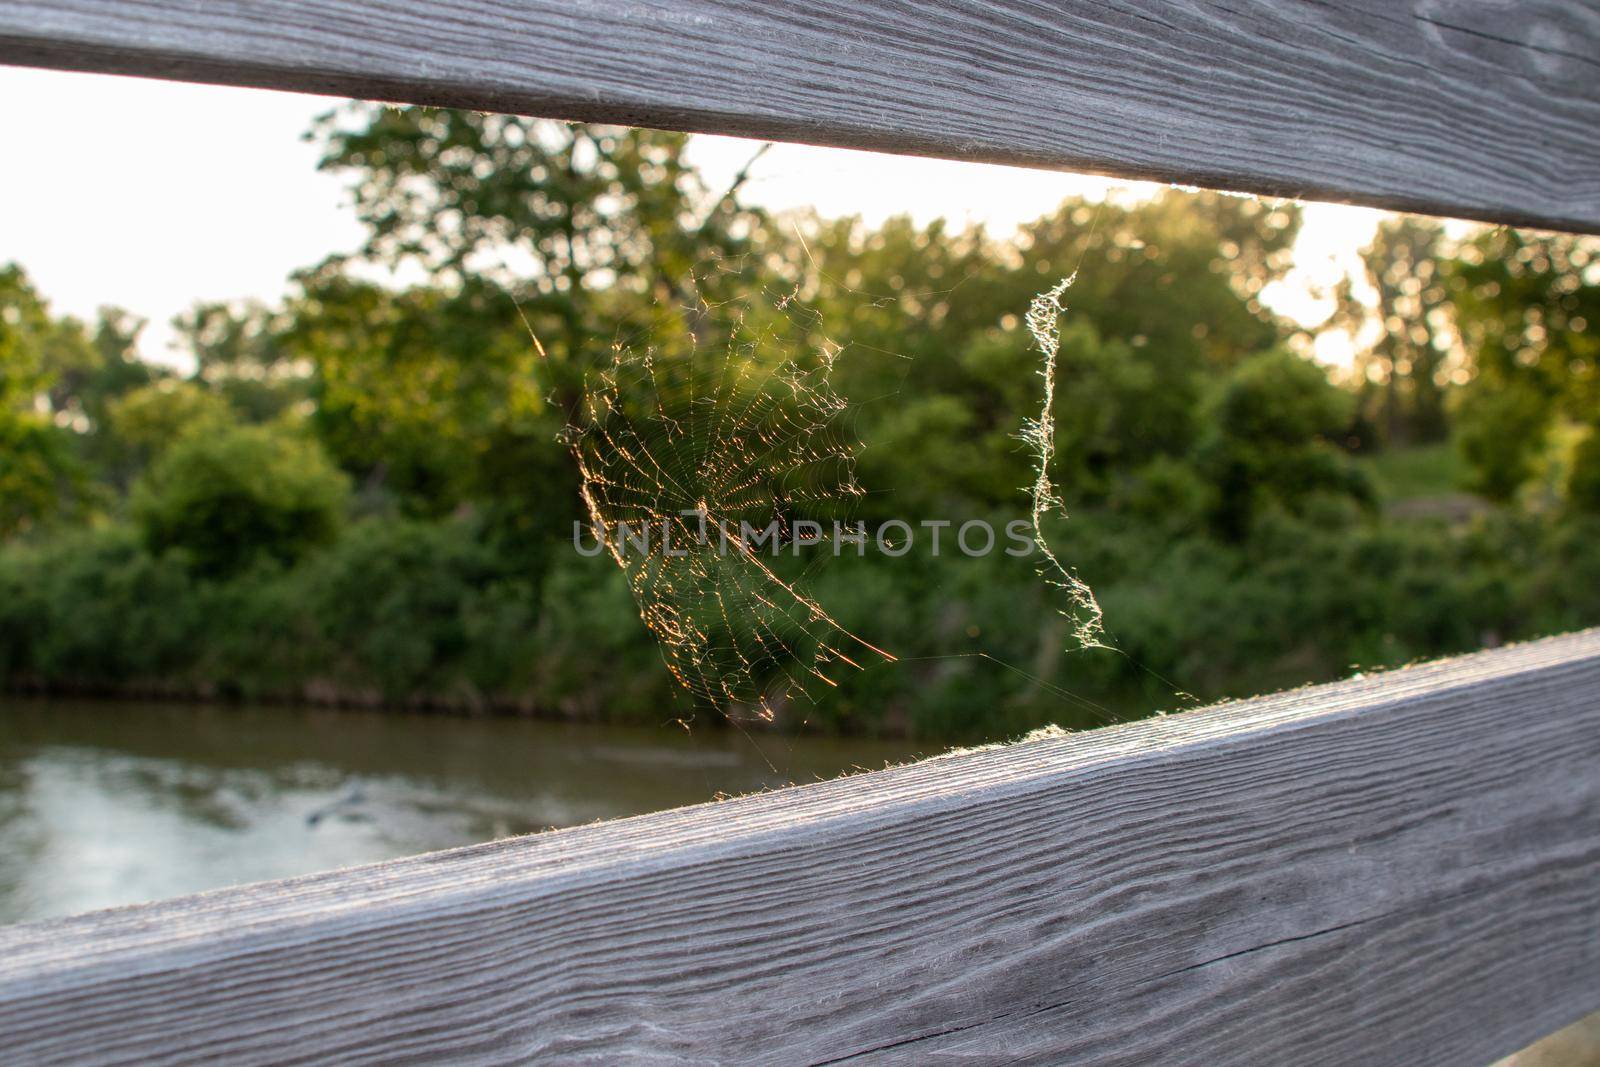 Spider web on wooden bridge between the rails by gena_wells